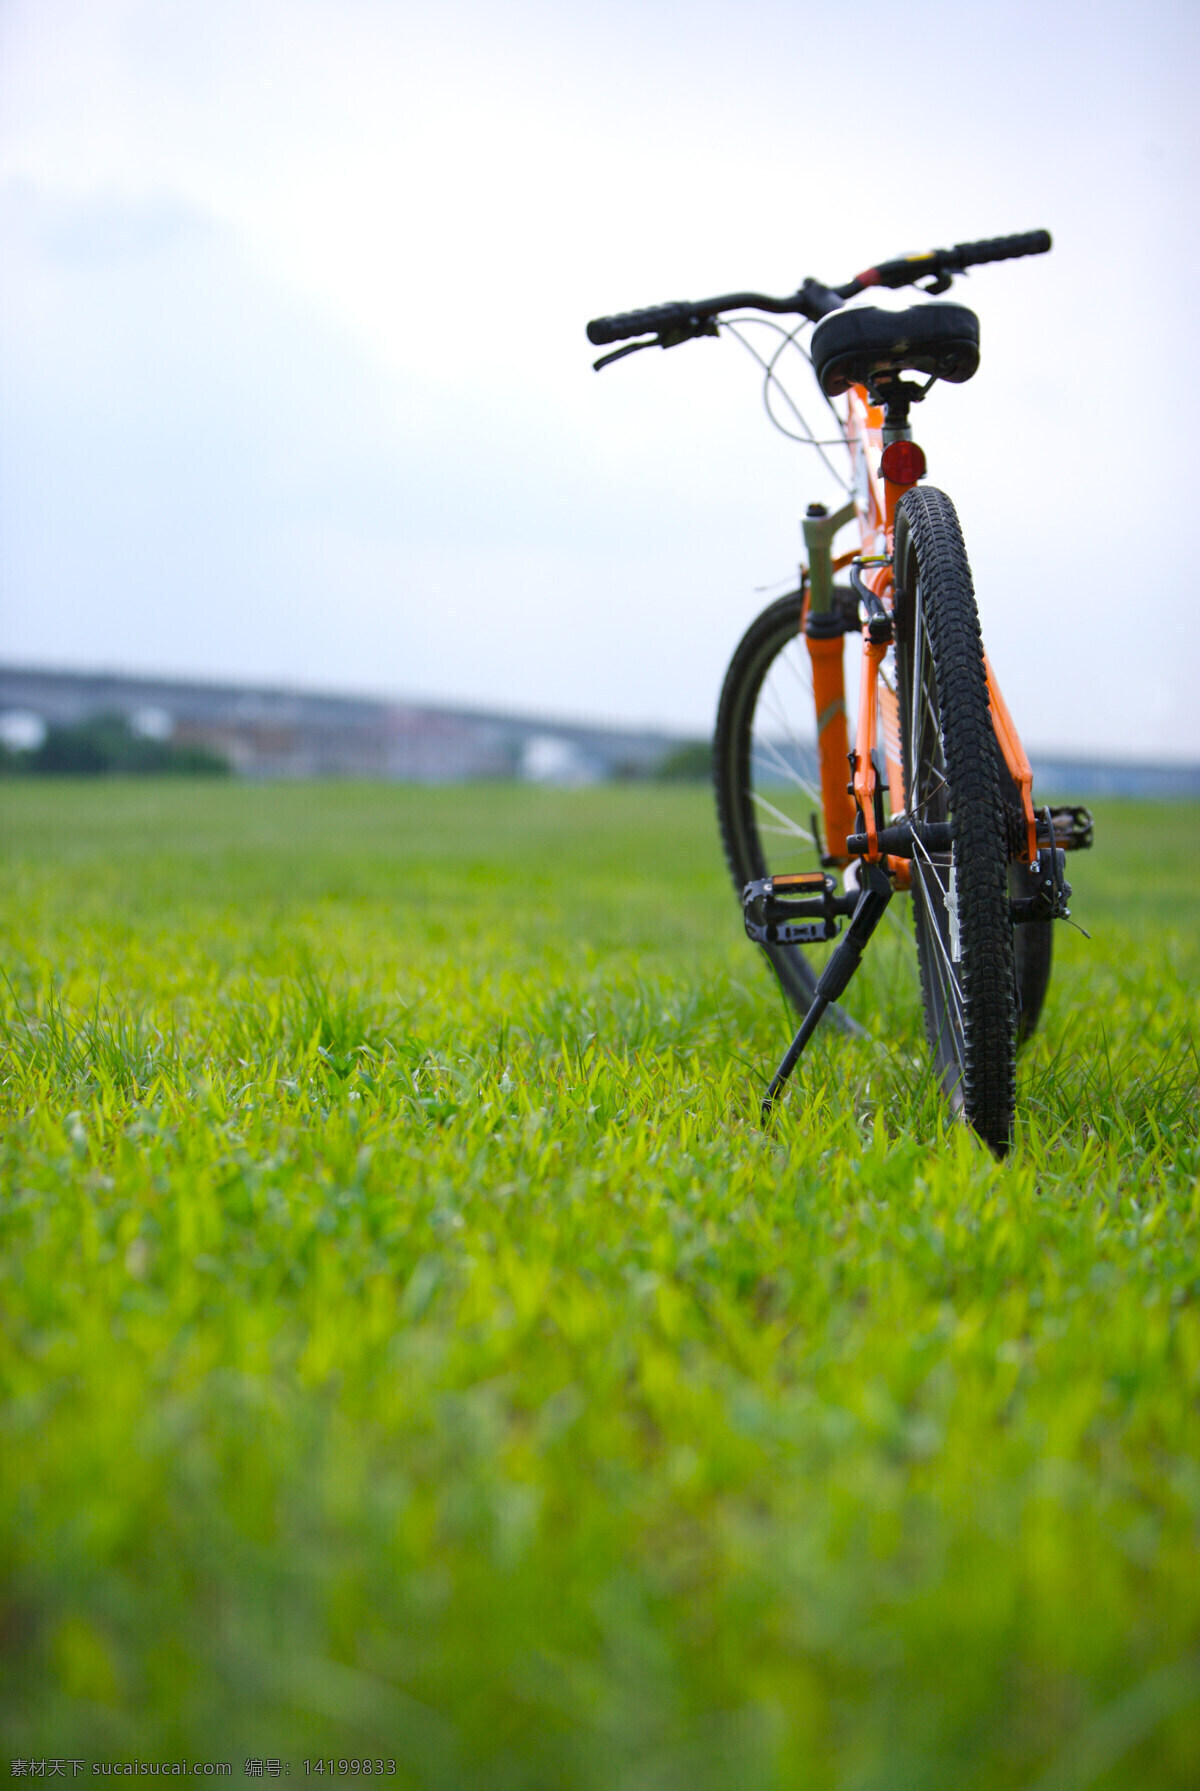 亲子 休闲 脚踏车 草坪 车道 风景 户外运动 赛车 自行车 生活 旅游餐饮